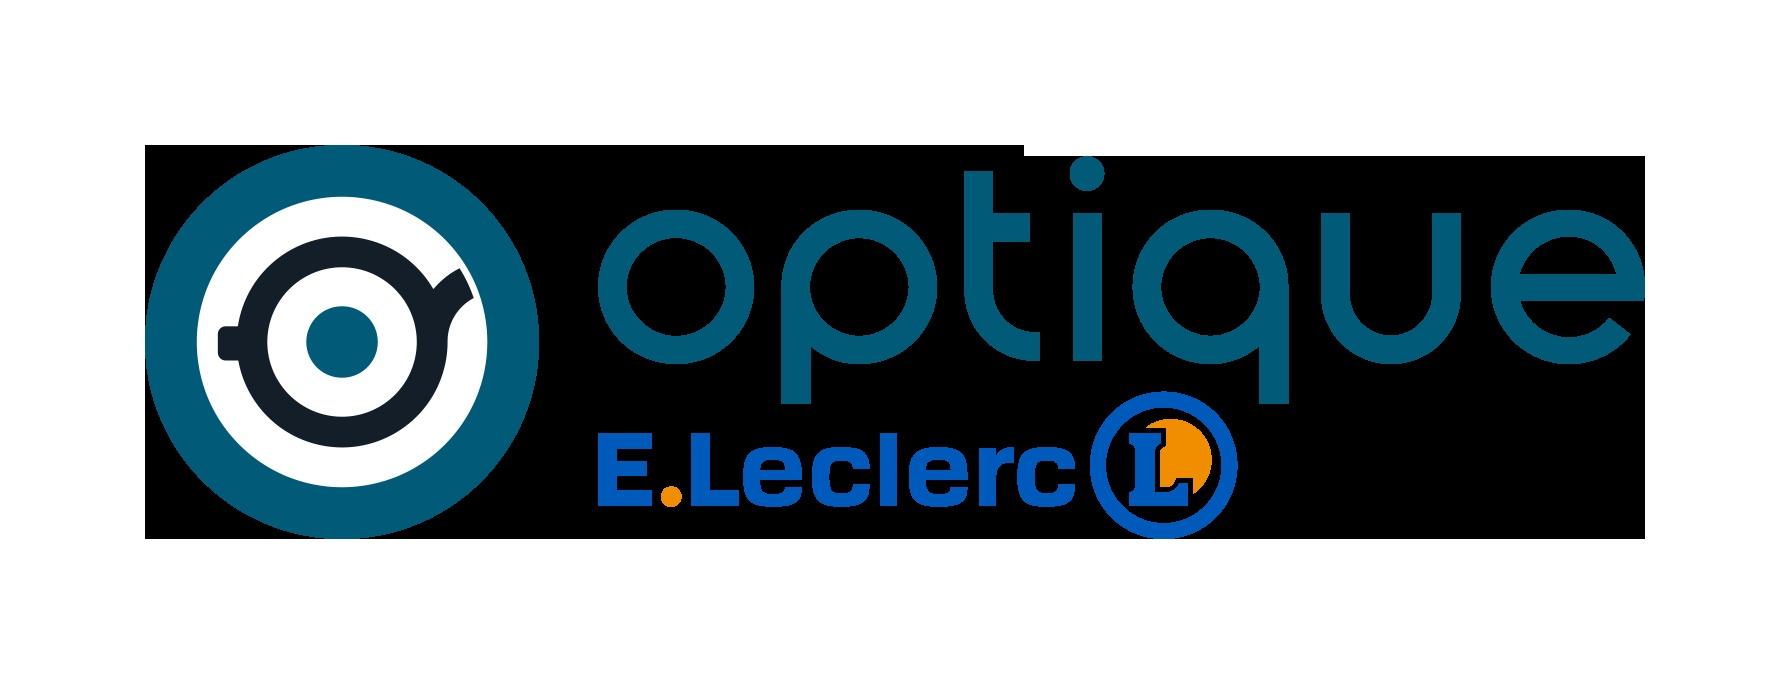 E.leclerc Optique Bellaing